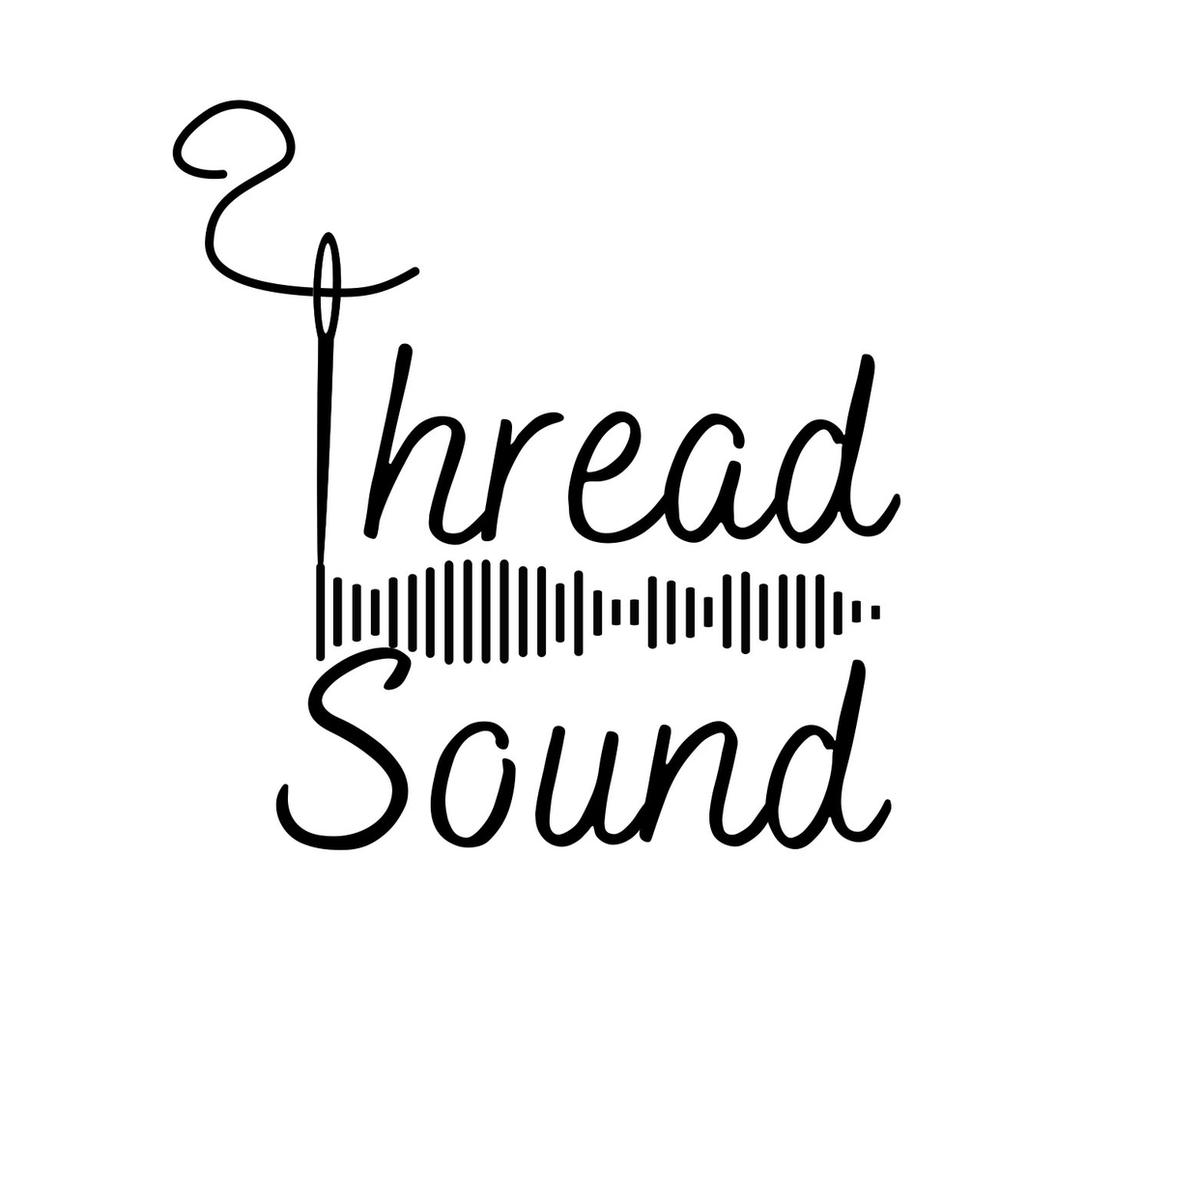 Thread Sound